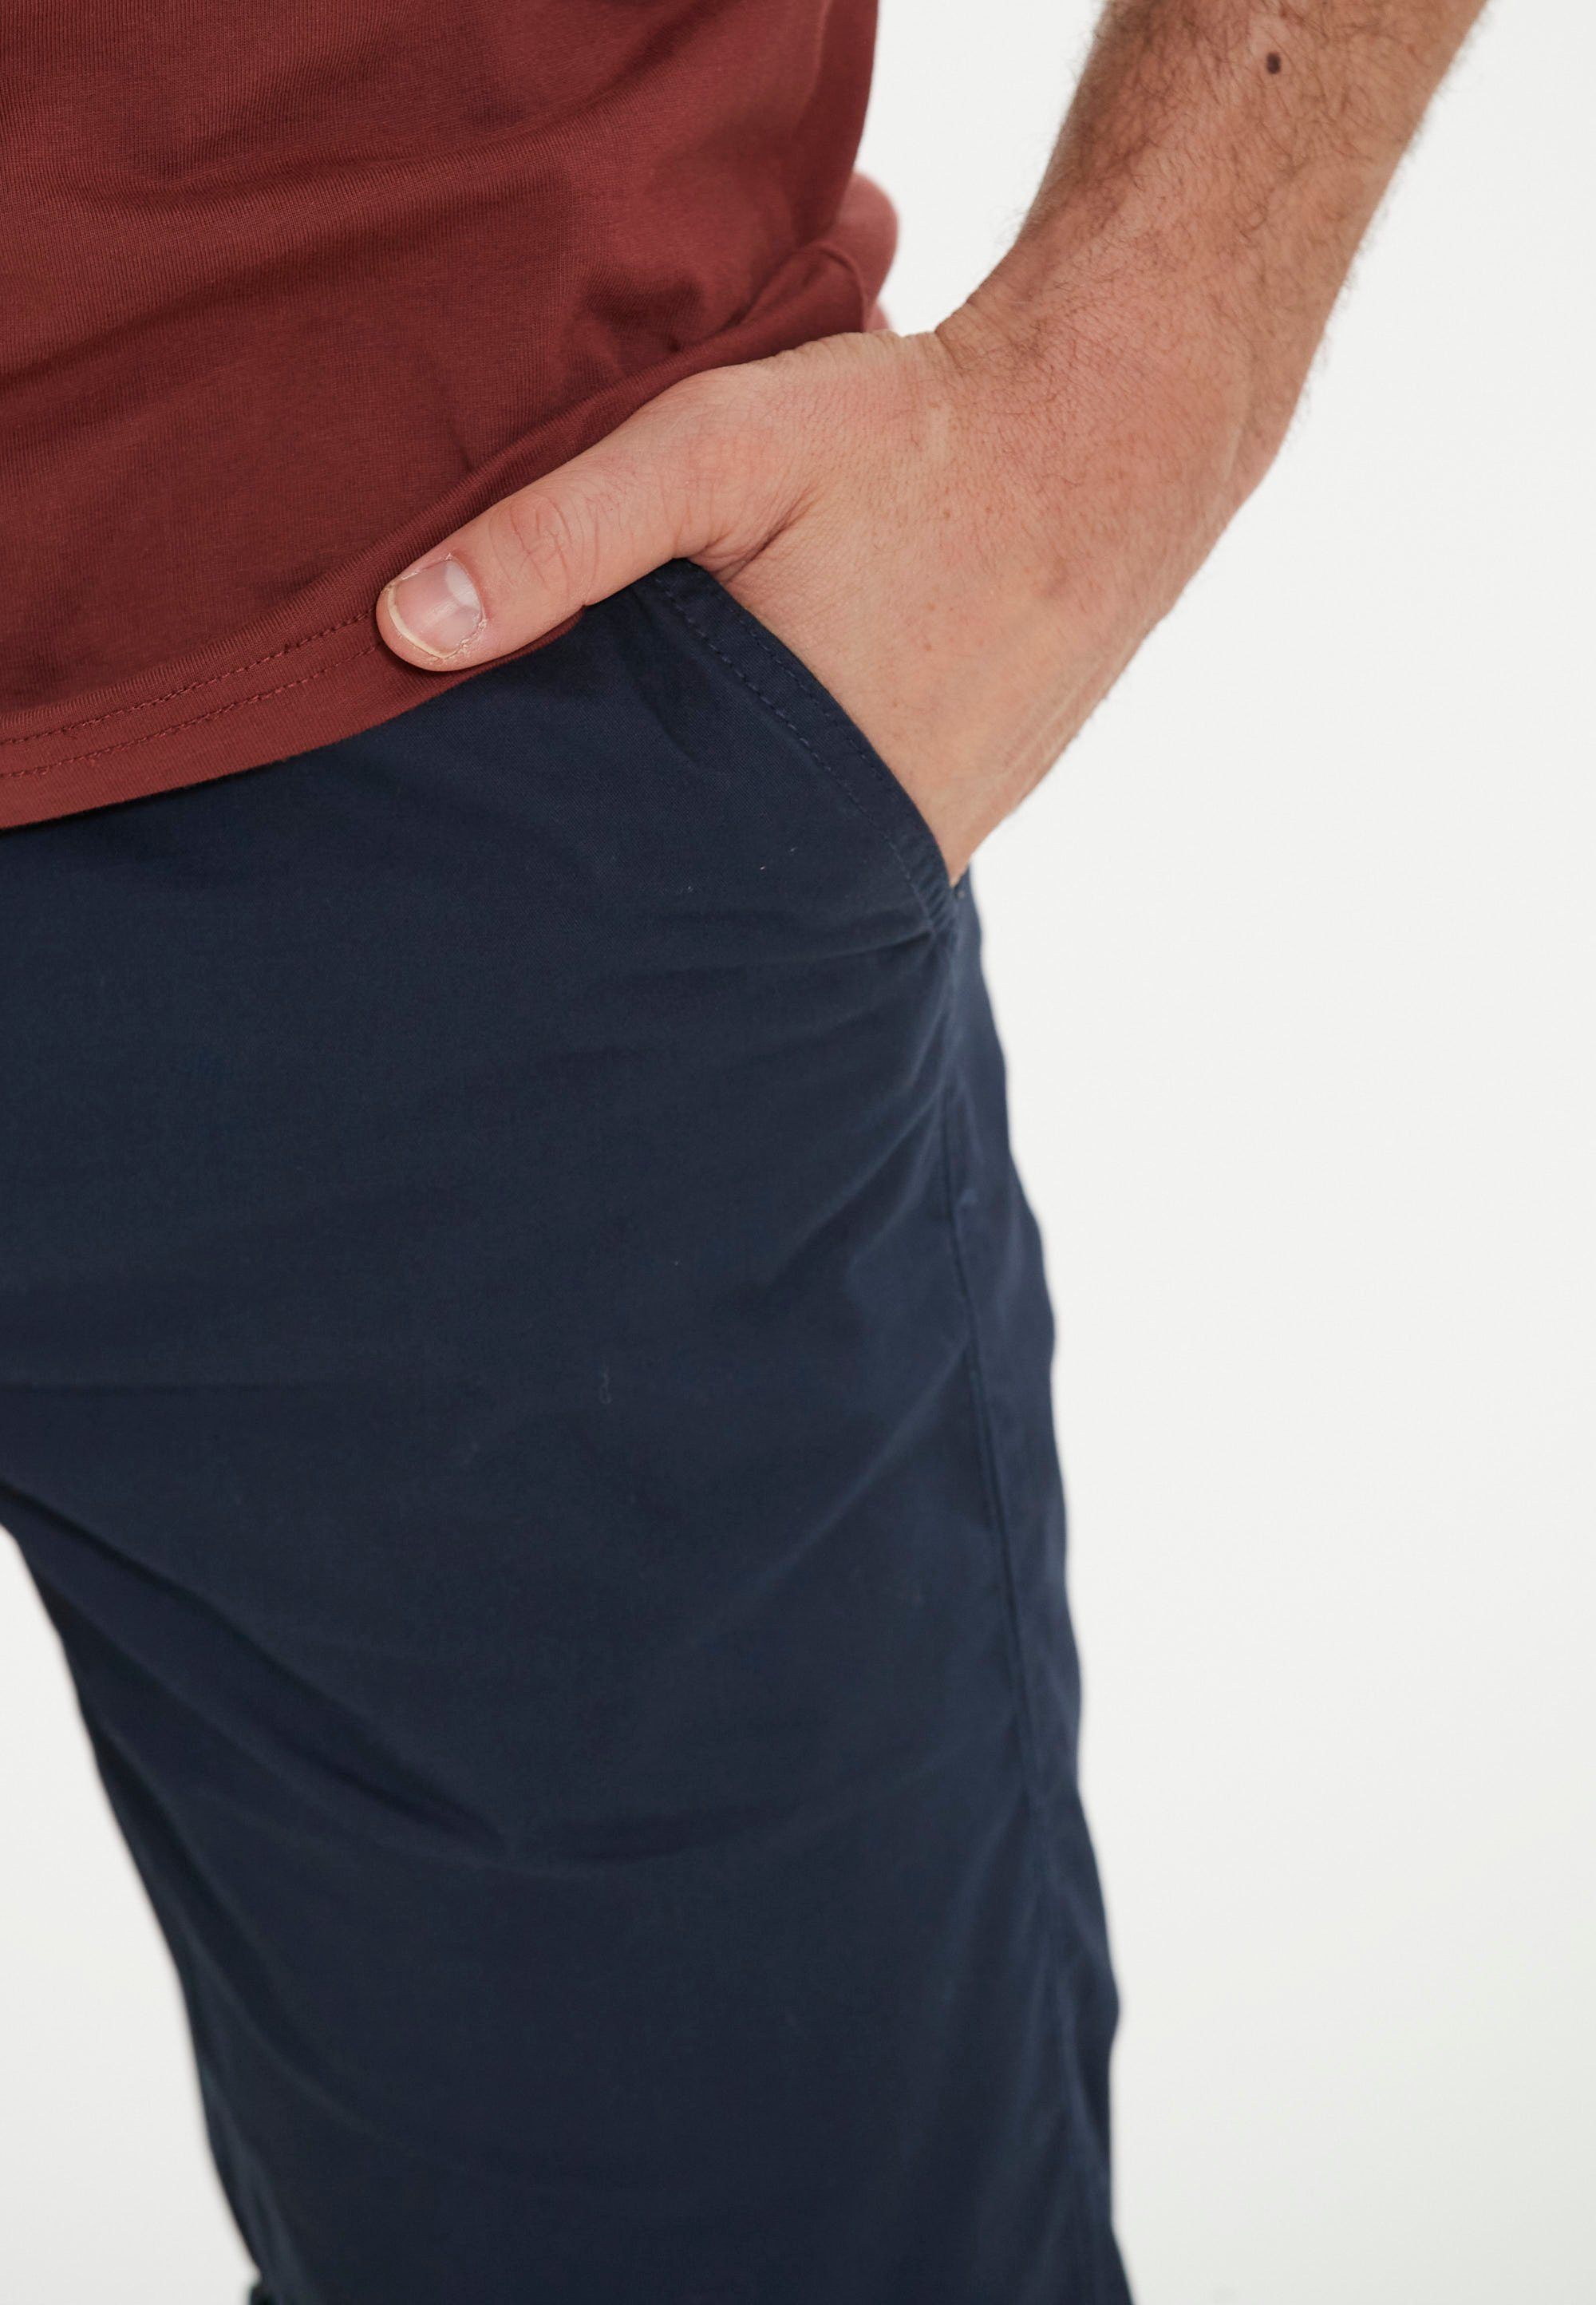 CRUZ Shorts Gilchrest mit Seitentaschen dunkelblau praktischen